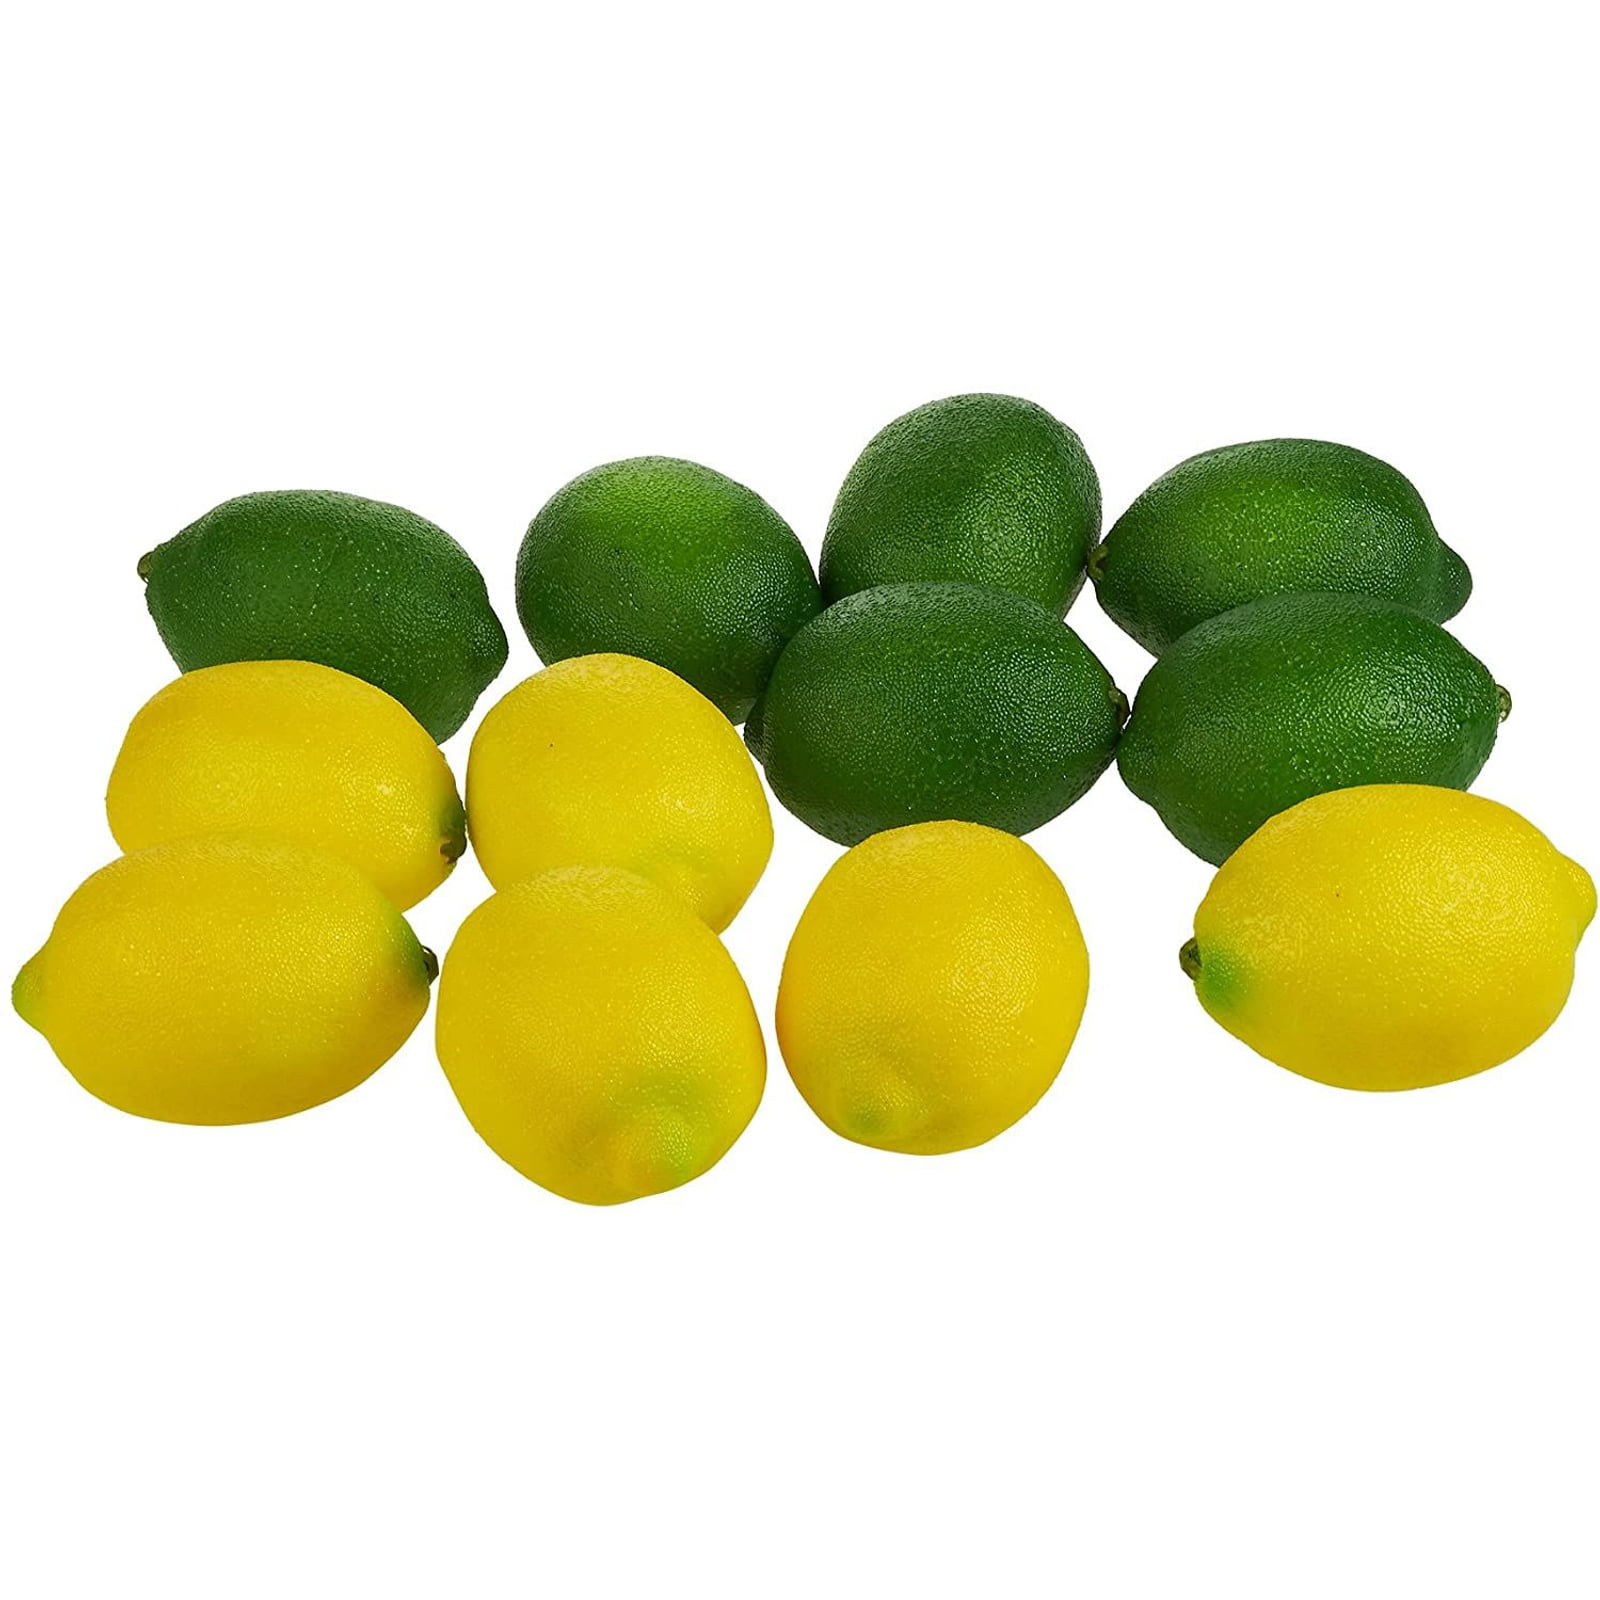 3 pcs Lemons Artificial Fruits Fake Lemon Props Theater Prop Staging Home Decor 